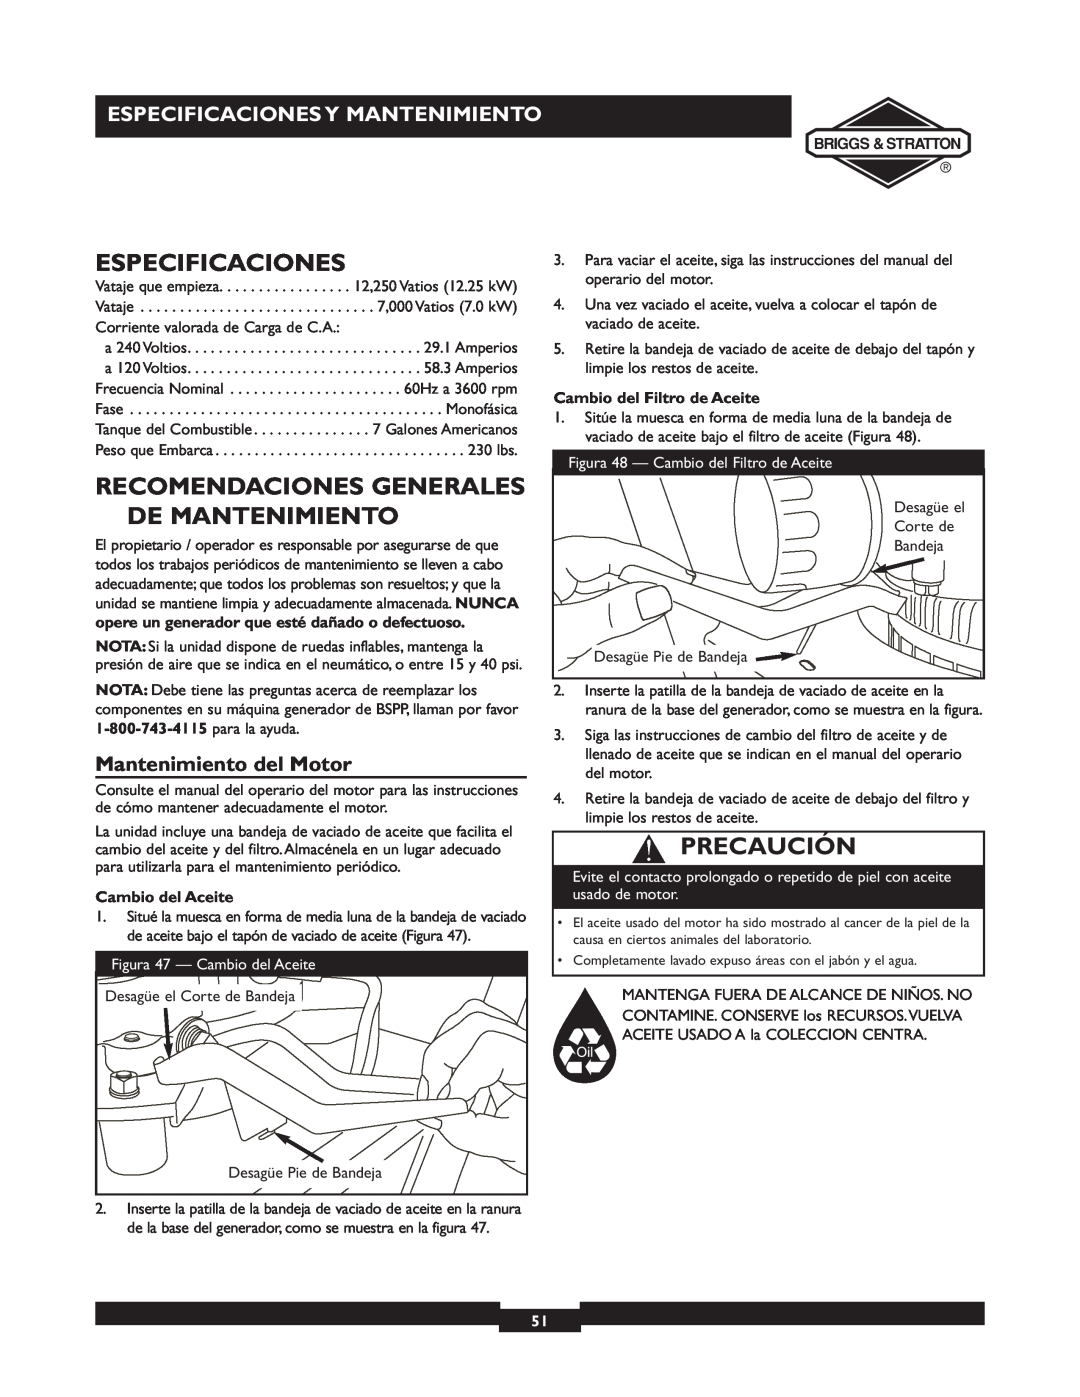 Briggs & Stratton 01894-1 Recomendaciones Generales De Mantenimiento, Especificaciones Y Mantenimiento, Precaución 